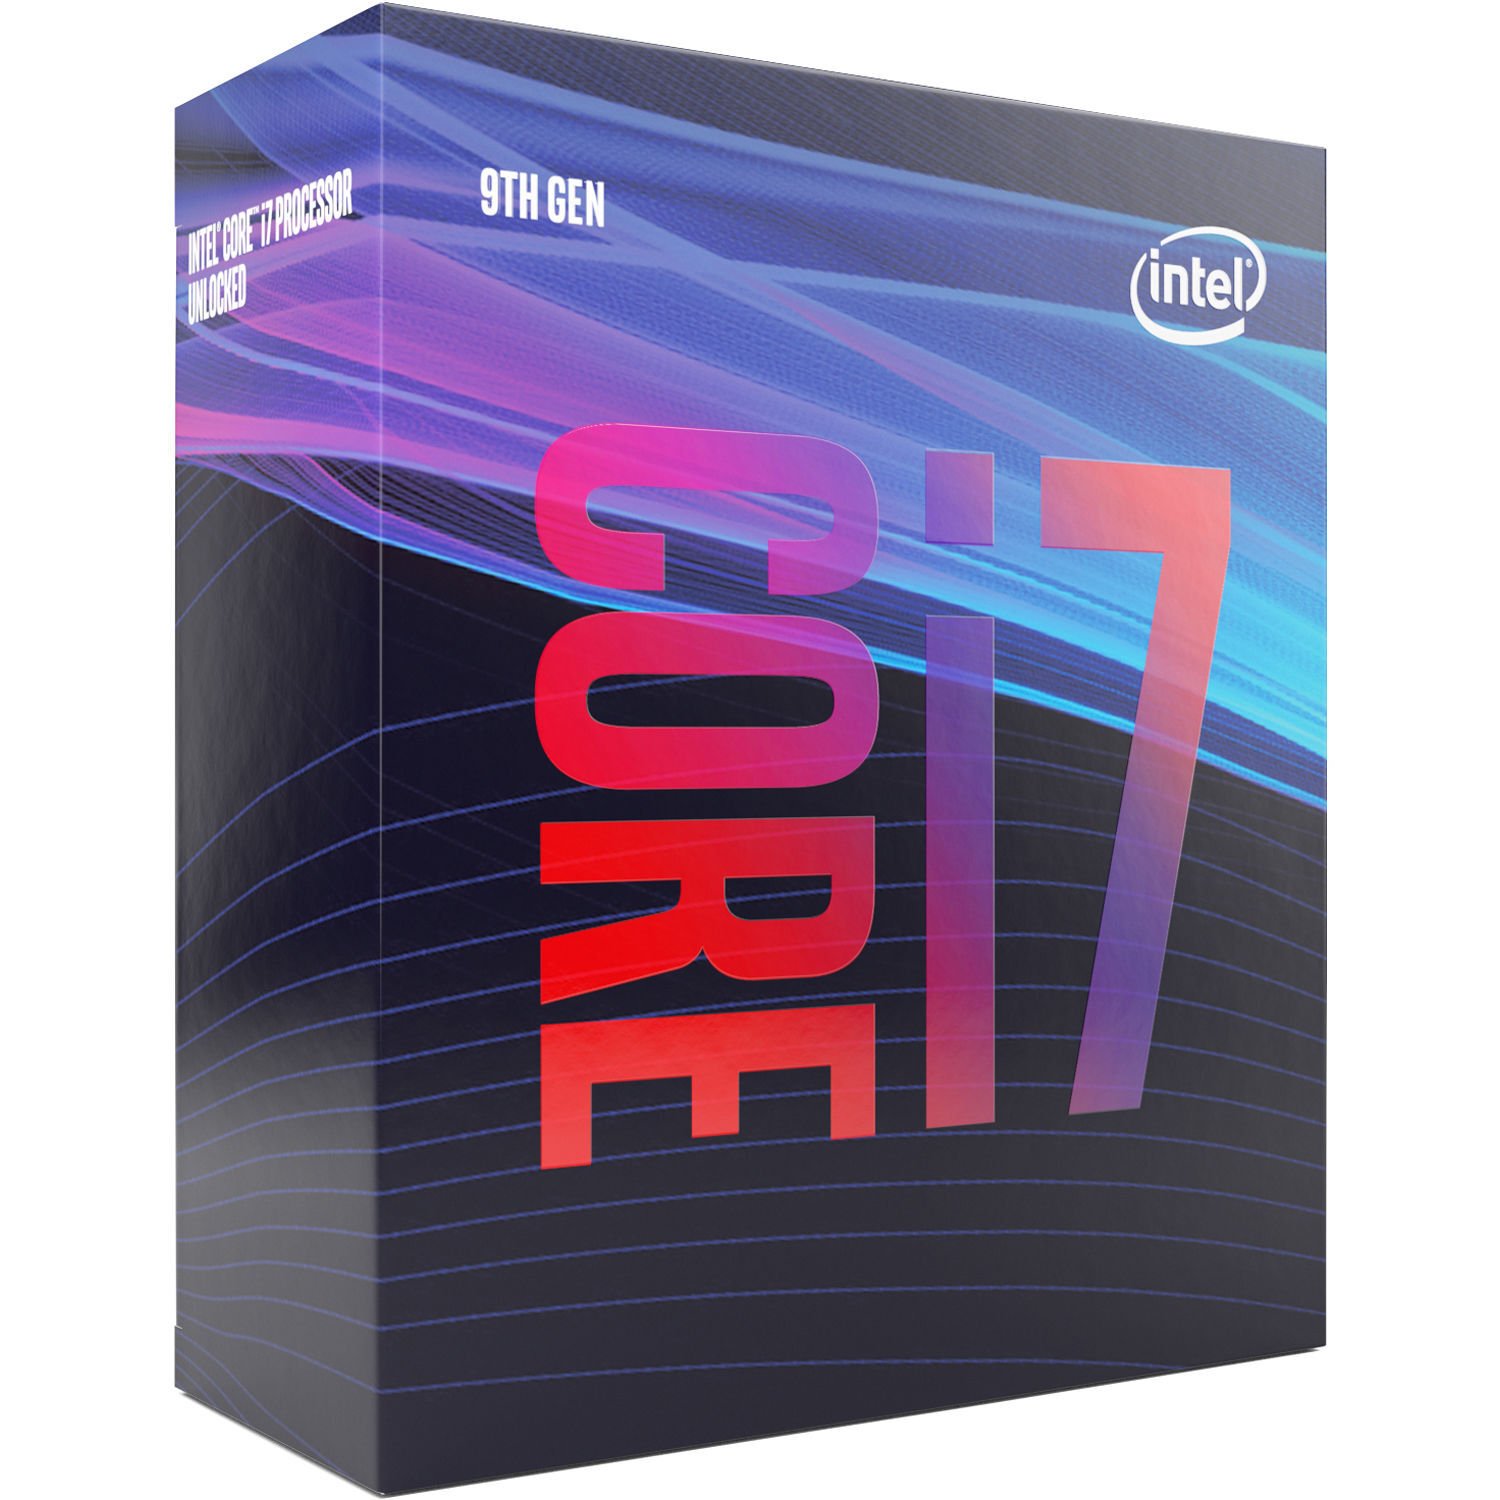  Процесор Intel Core i7-9700 8/8 3.0GHz 12M box (BX80684I79700) фото